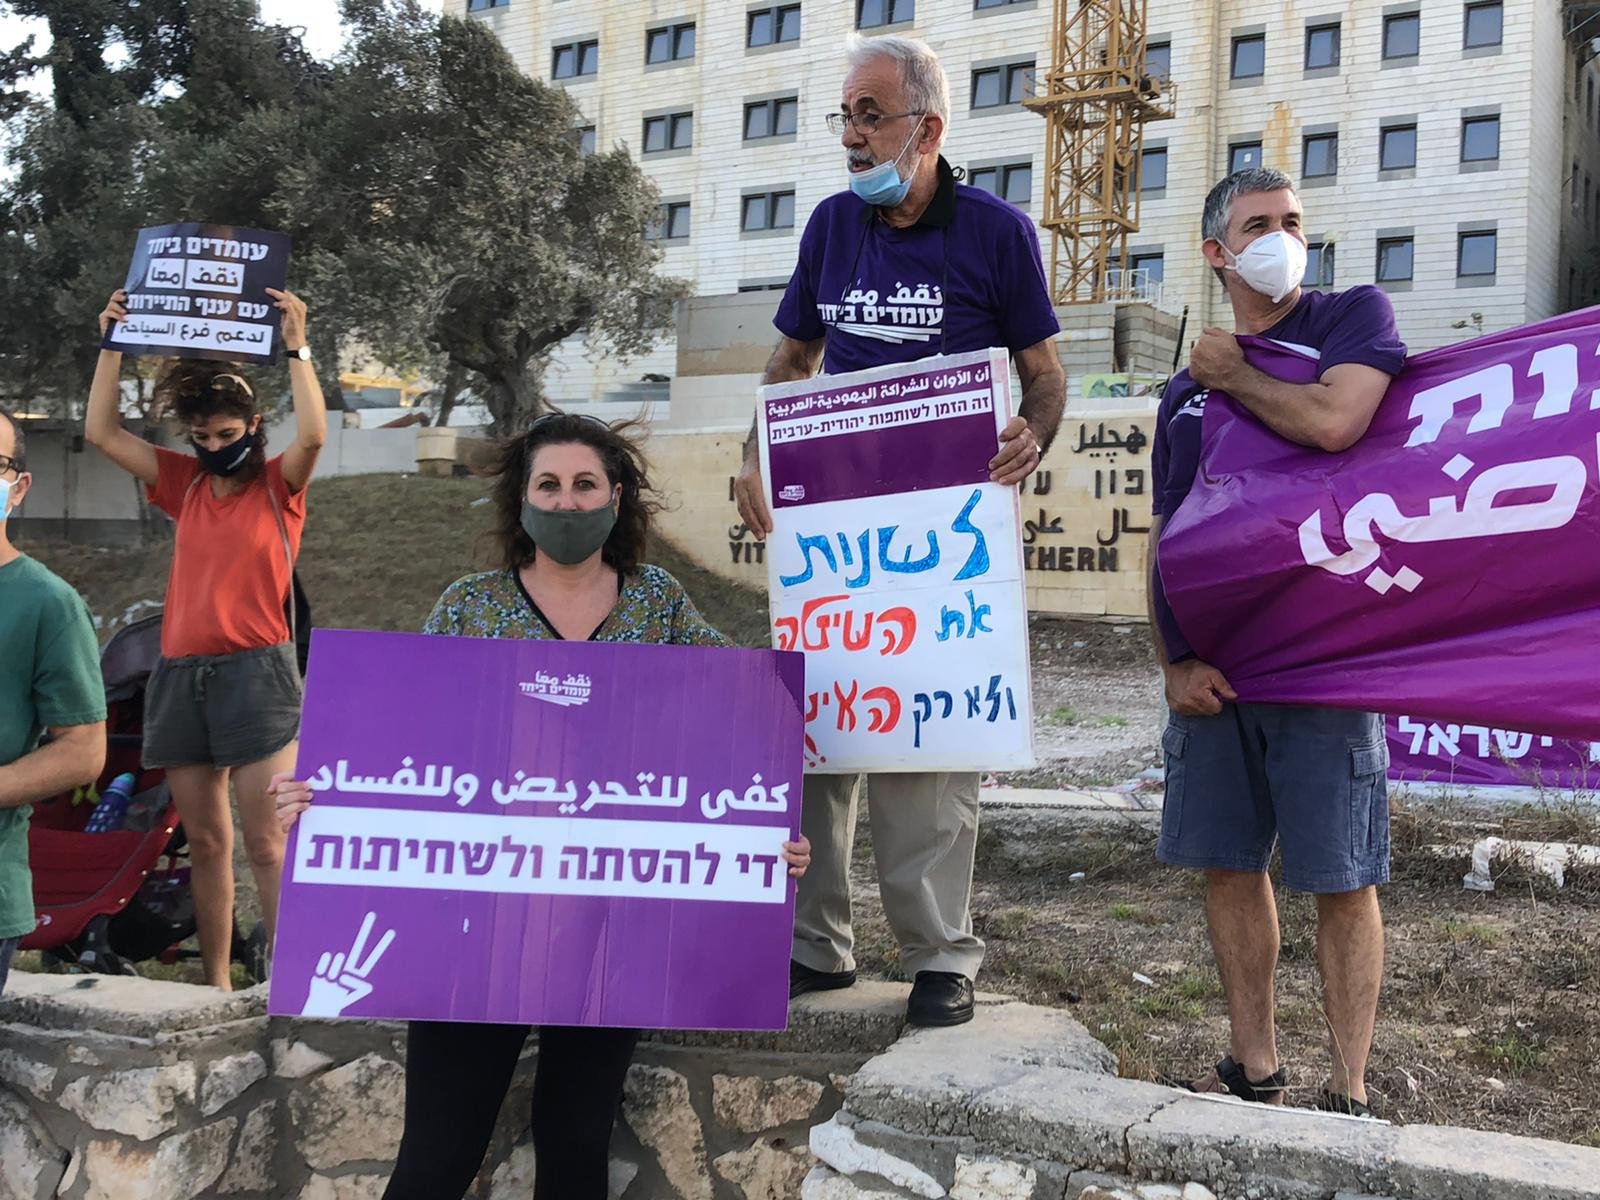 وقفة احتجاجية امام مبنى المحاكم في الناصرة تطالب بالعدالة الاجتماعية وتغيير المنظومة الحكومية الحالية-15